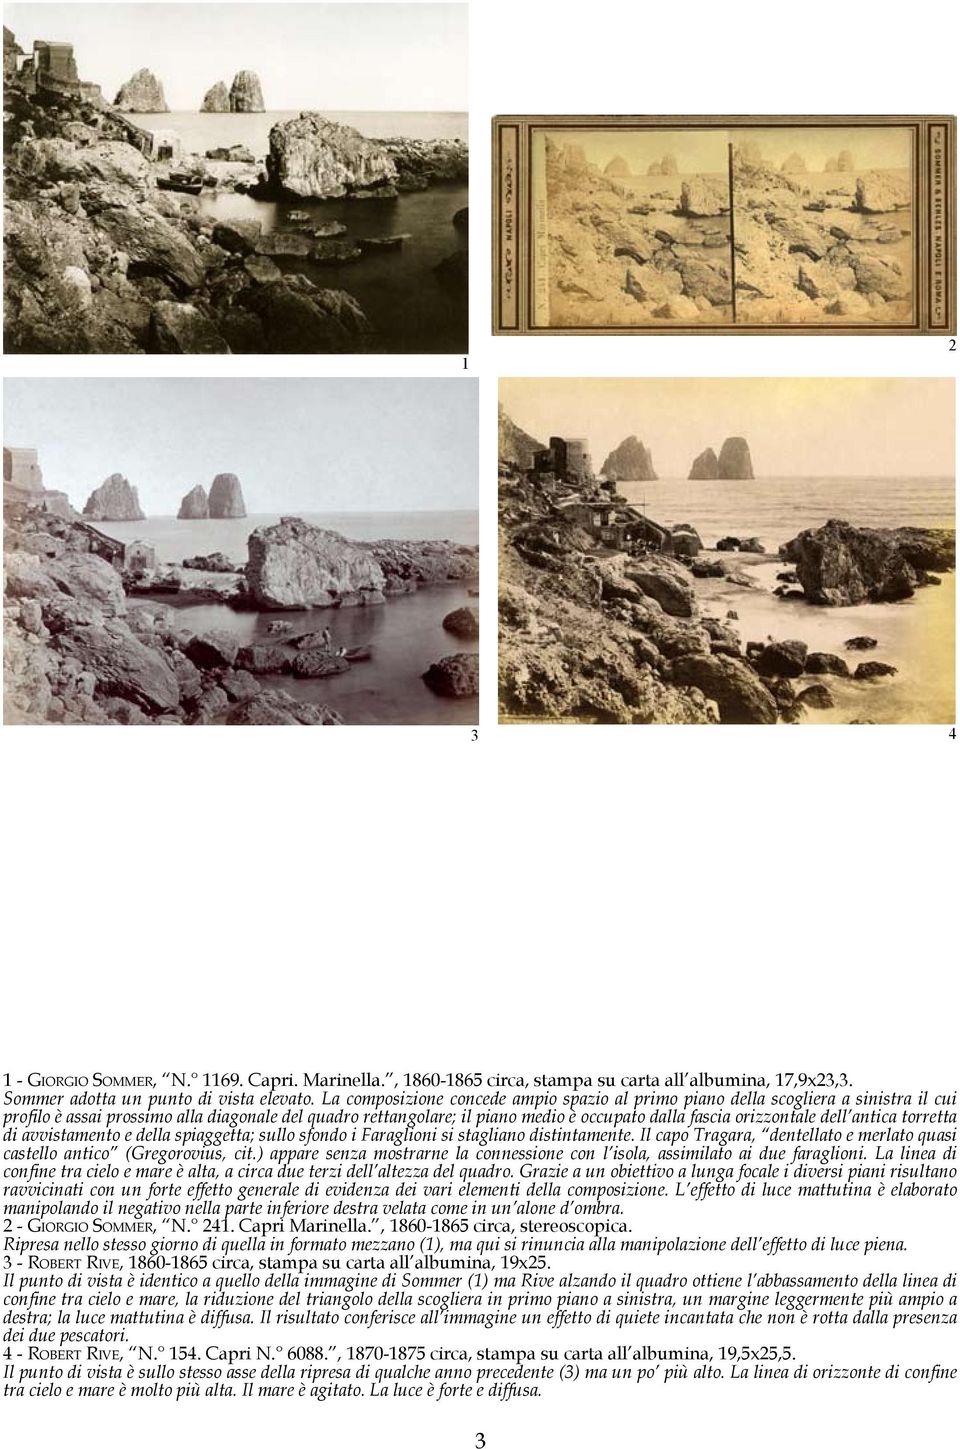 orizzontale dell antica torretta di avvistamento e della spiaggetta; sullo sfondo i Faraglioni si stagliano distintamente.